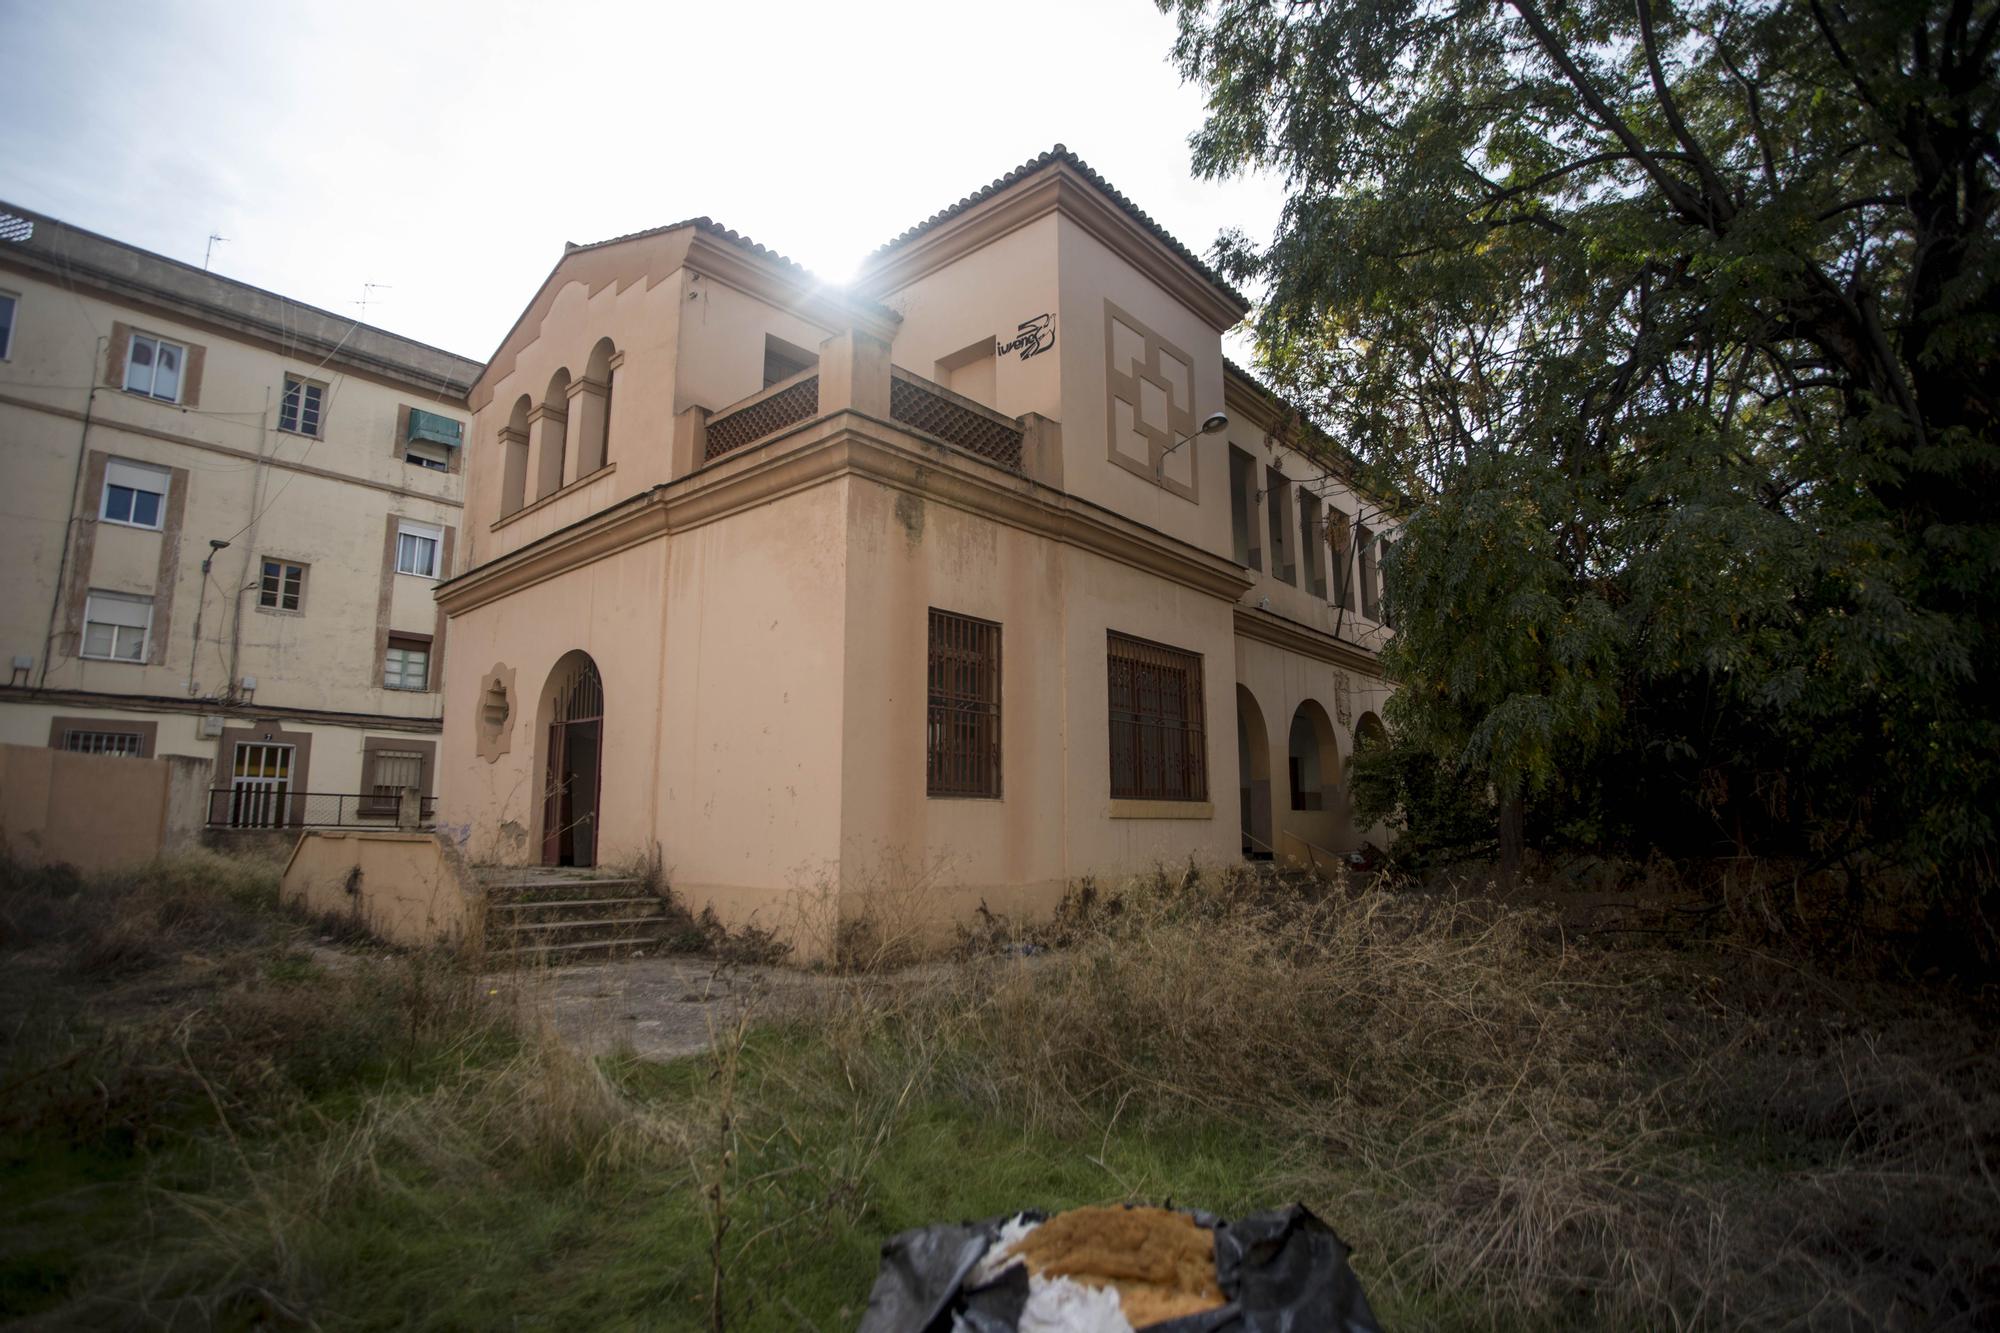 Quince migrantes africanos malviven en un colegio abandonado de València